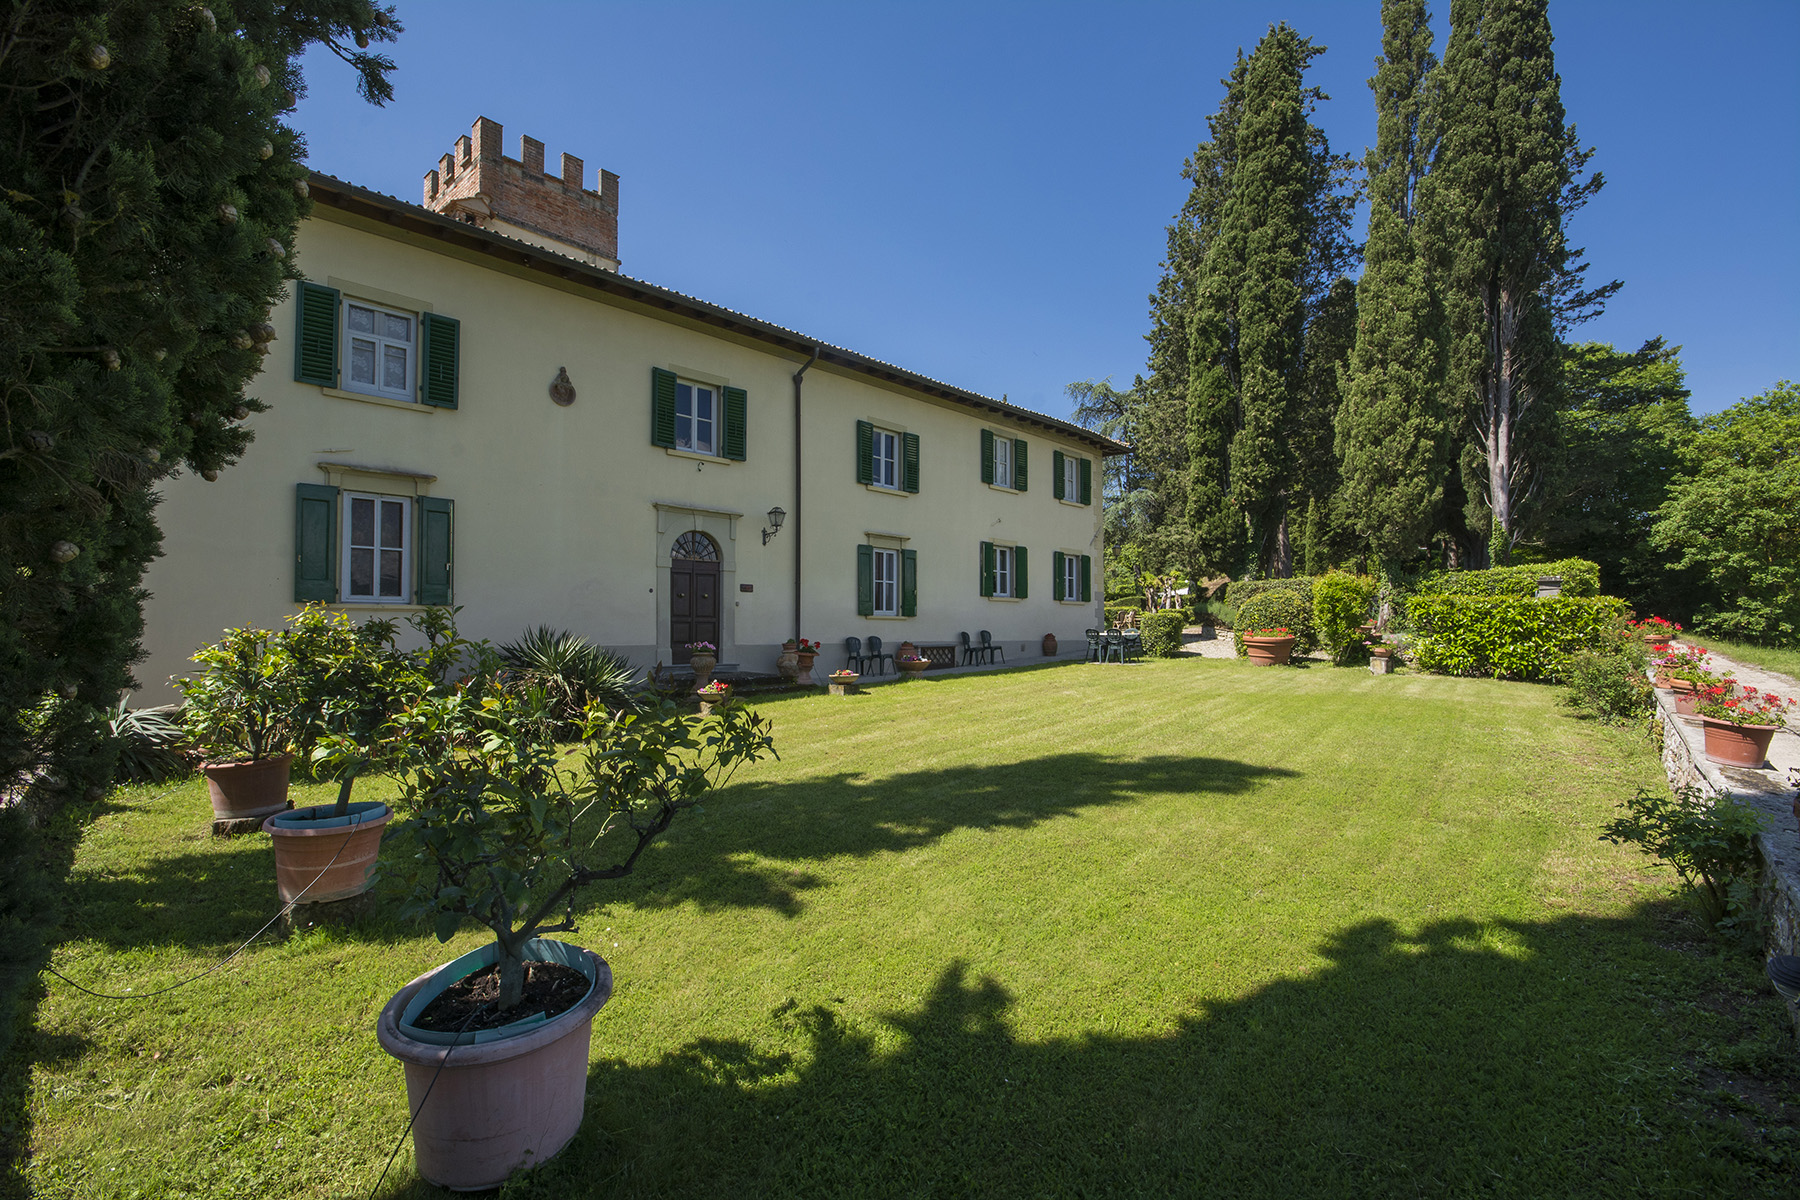 Fascinating villa in the Val di Sieve area